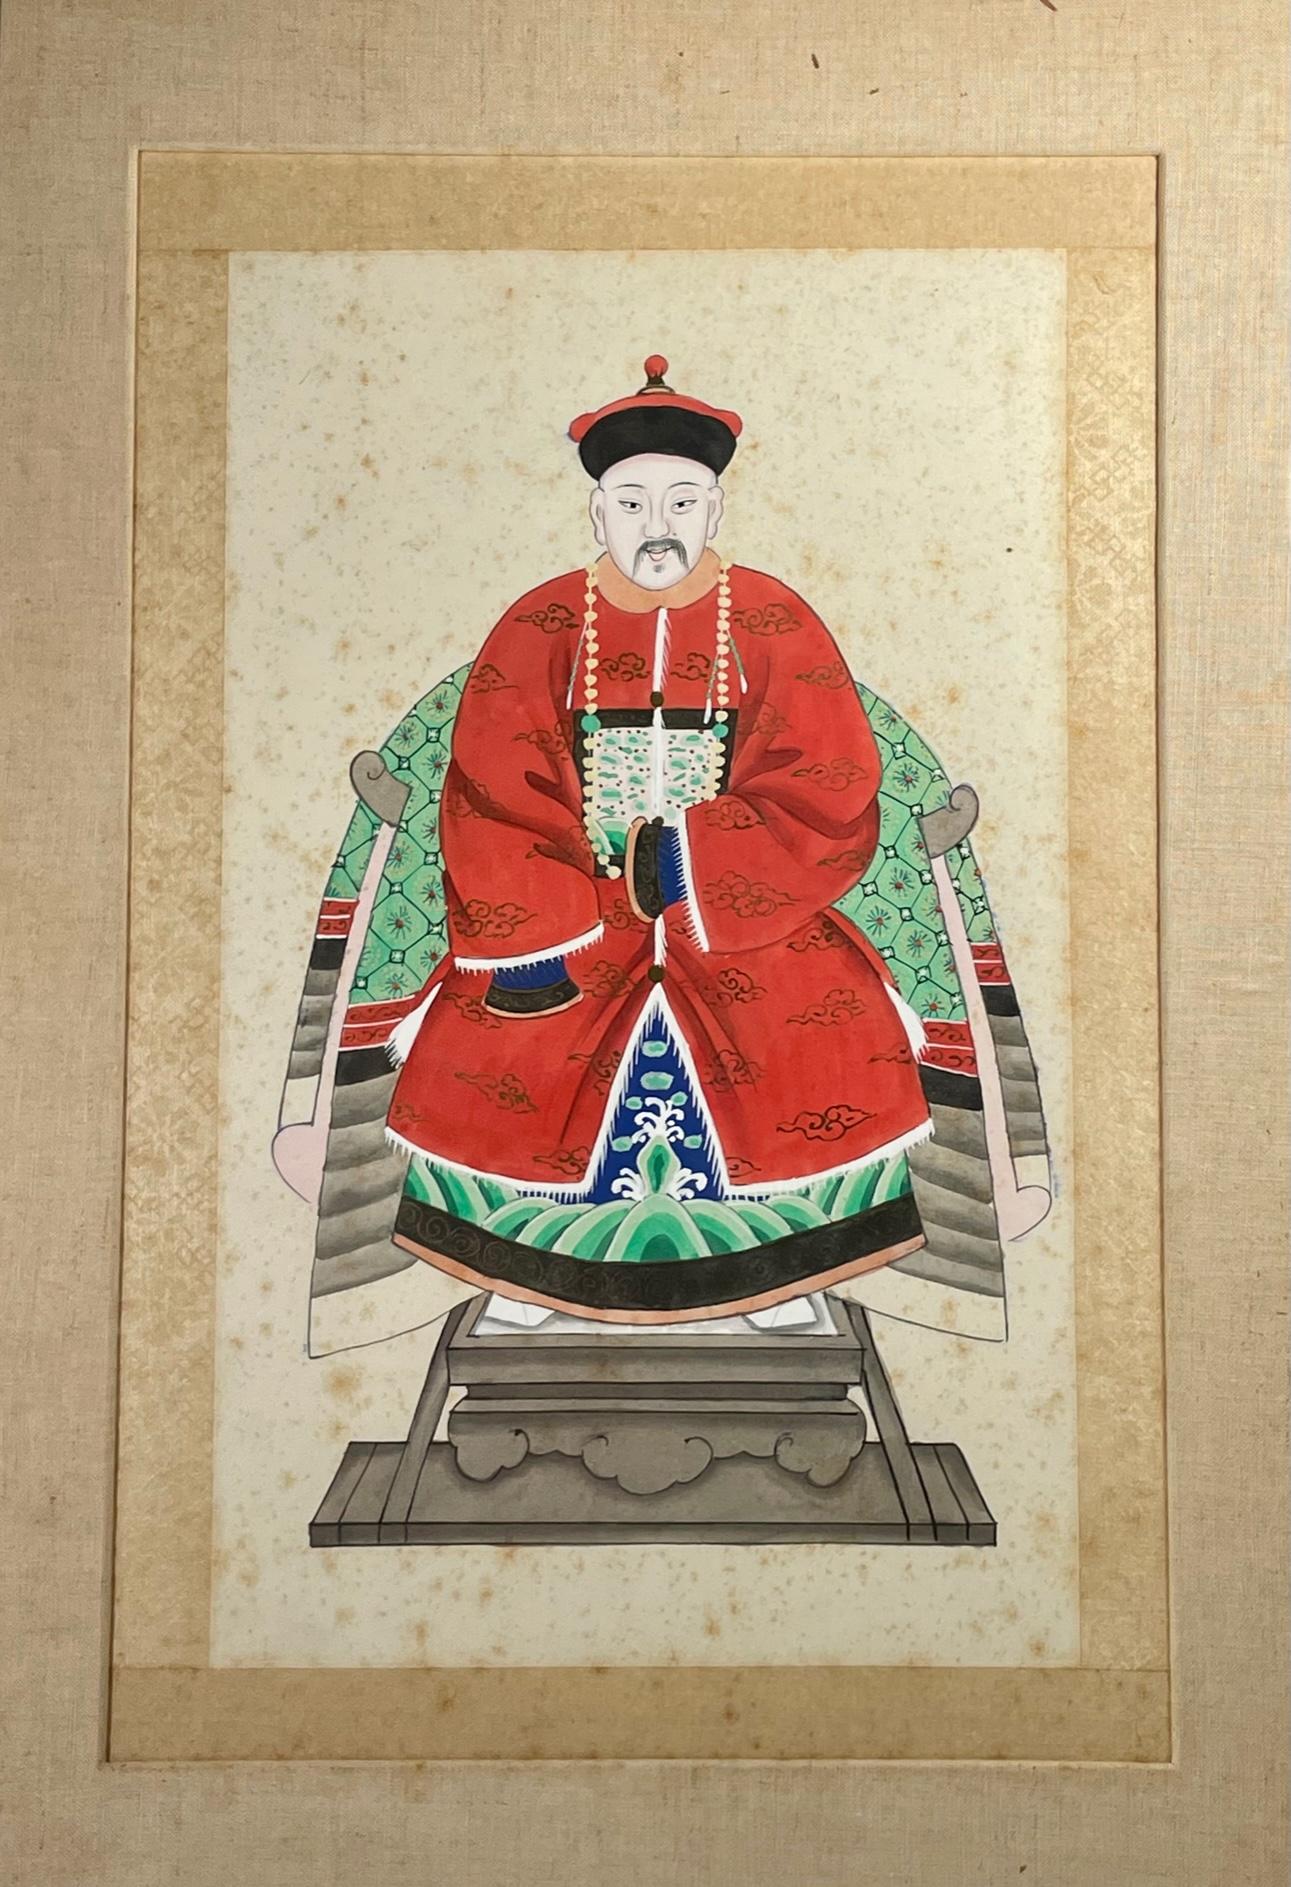 Chinesisches Ahnenporträt eines Mandarin-Würdenträgers. 

Antike Temperamalerei auf Papier eines Mandarin-Würdenträgers in rotem Hofkleid, der auf einem Thronsessel sitzt. Nach dem Stil seiner formellen Robe zu urteilen, handelte es sich bei